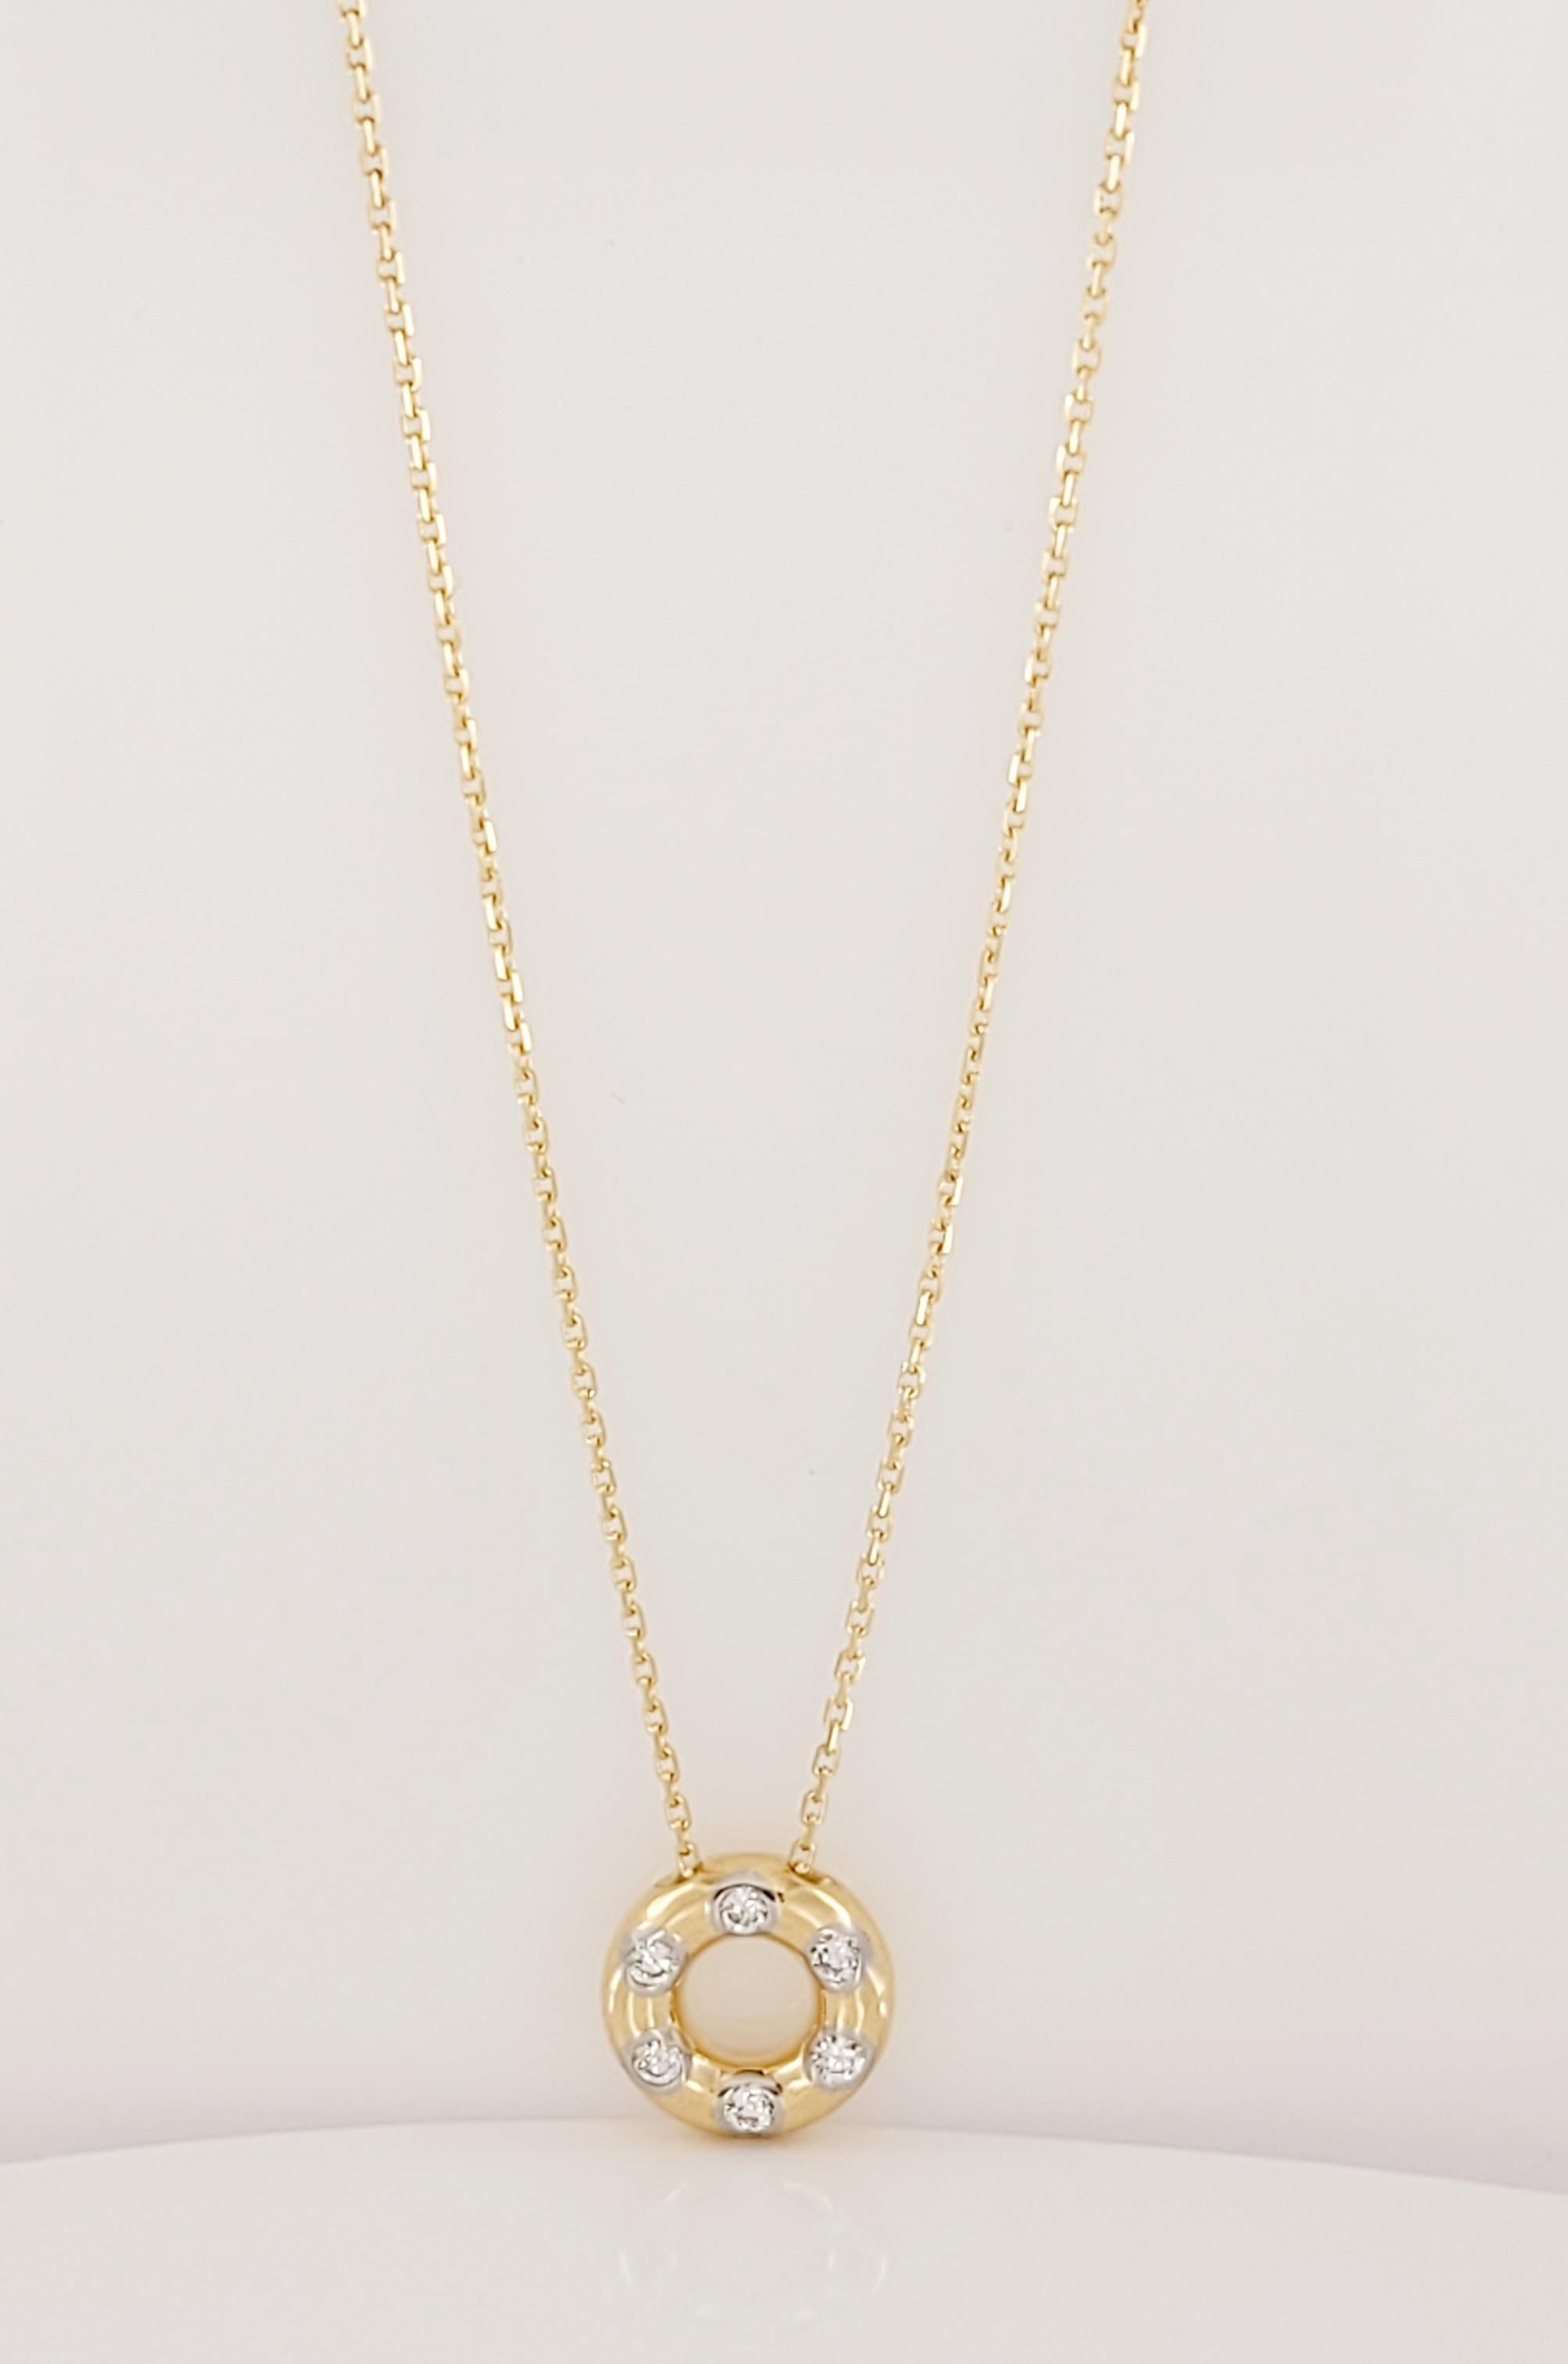 Tiffany &Co Etoile Anhänger Halskette
Metall 18K Gelbgold 
Gewicht 6.4gr 
Kette 16'' lang
Anhänger:12,3mm Durchmesser
Diamant 6 runde Brillanten, Gesamtgewicht 0,18 Karat
Diamant Reinheit VS. Farbe Grad E-F 
Punzierung: 